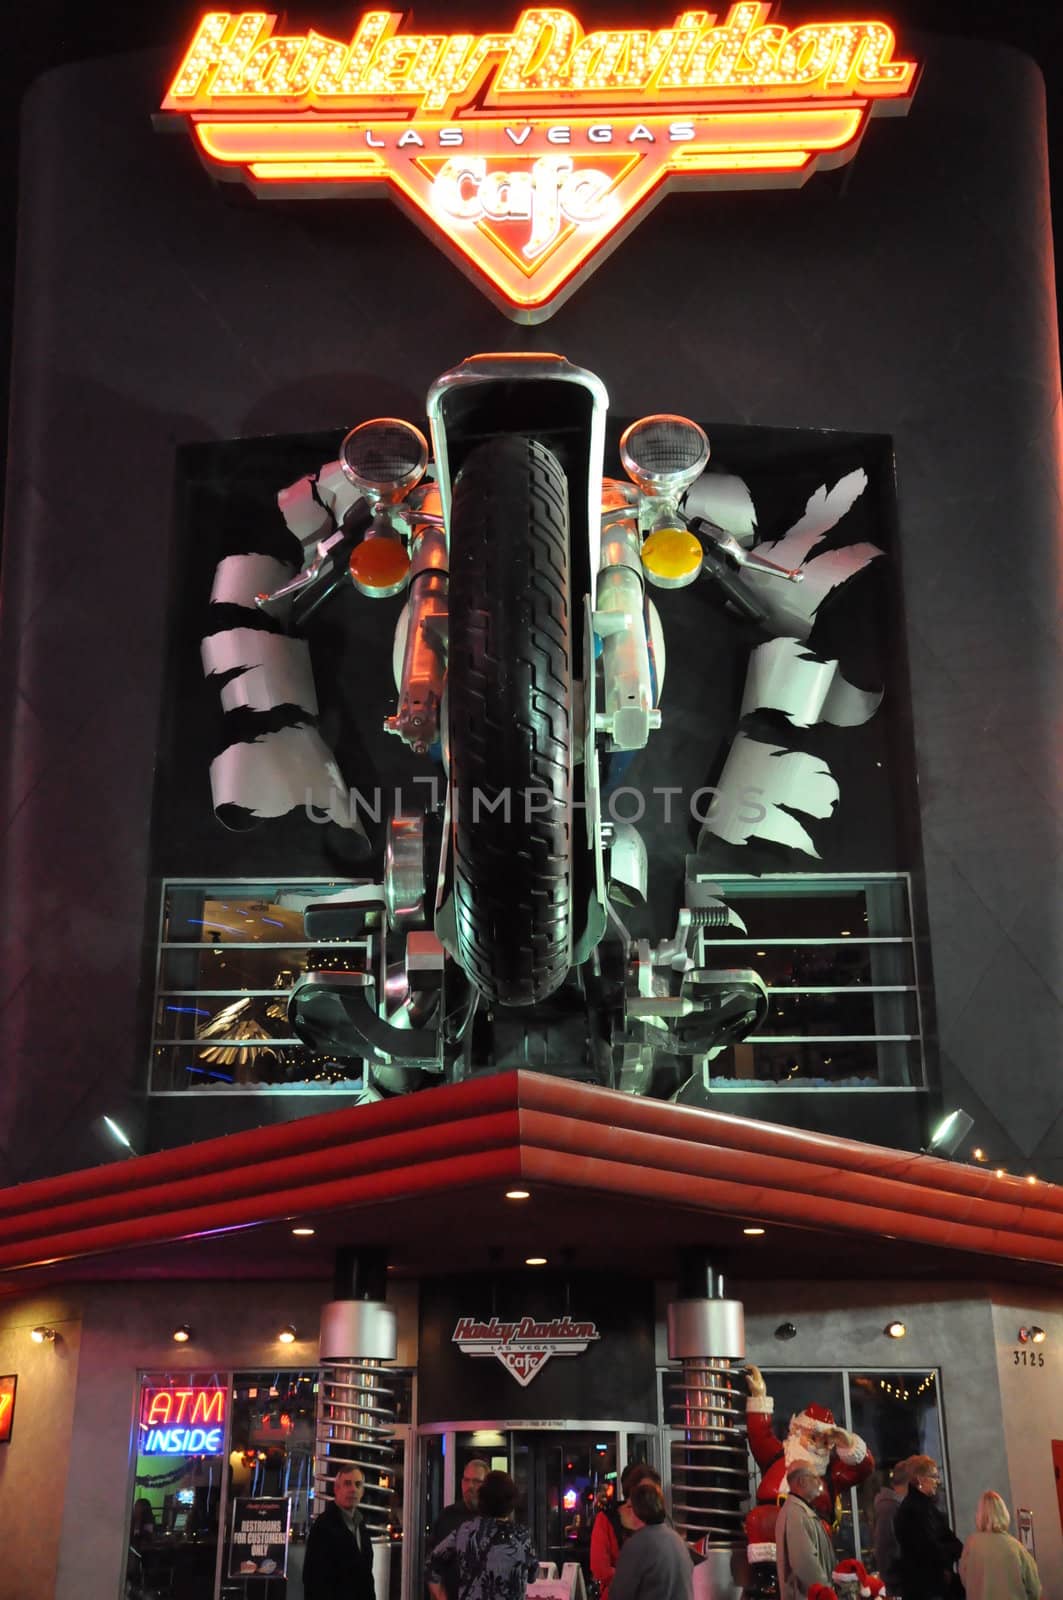 Harley Davidson Cafe in Las Vegas by sainaniritu